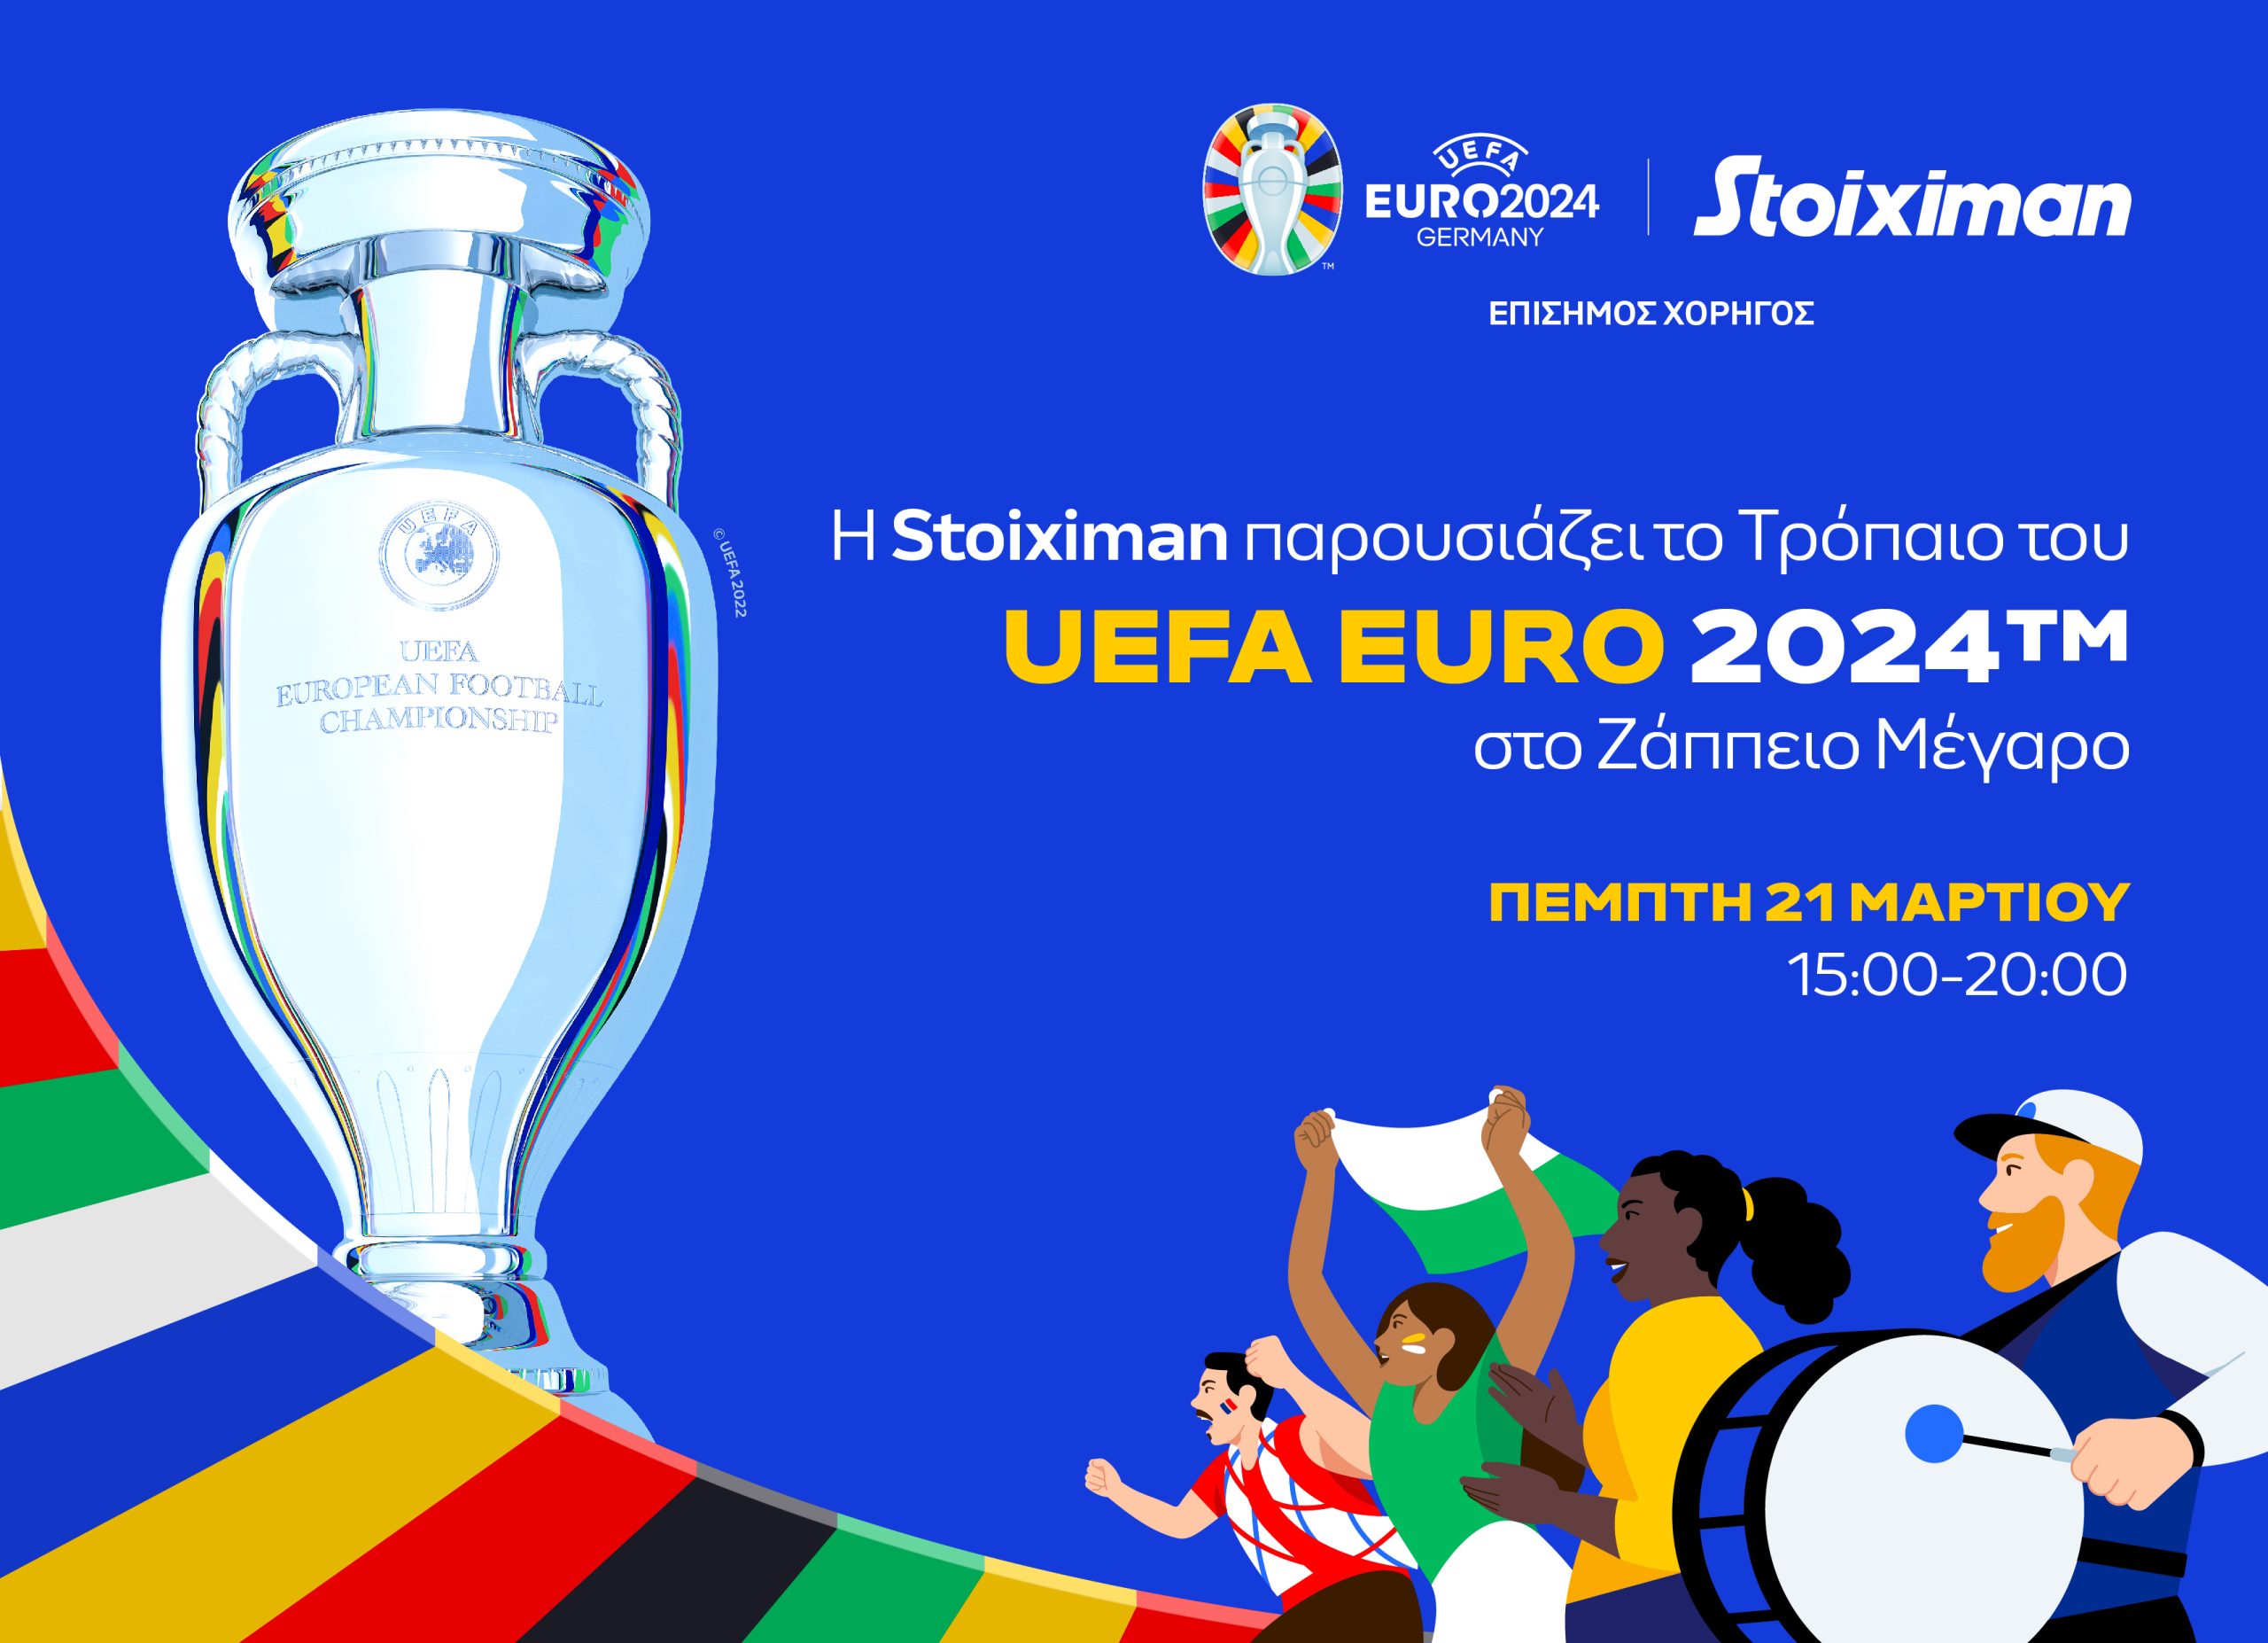 H Stoiximan παρουσιάζει το Κύπελλο του UEFA ΕURO 2024™ στο ελληνικό κοινό